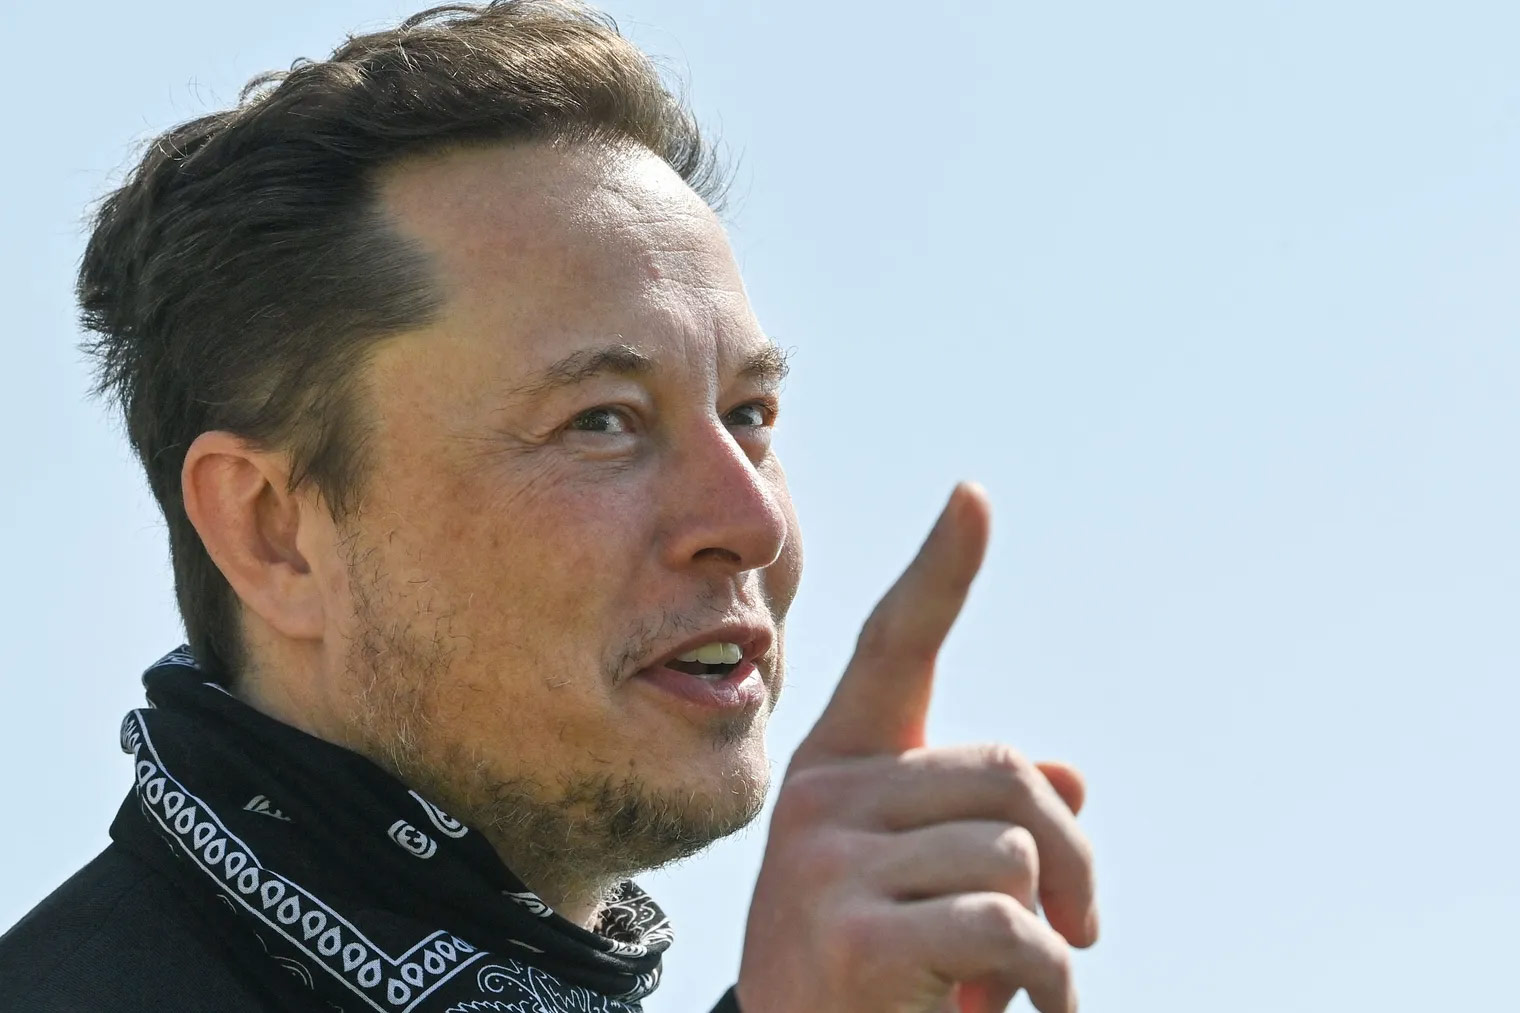 Μικρός, αλλά υπαρκτός ο κίνδυνος χρεωκοπίας για την SpaceX λέει ο Elon Musk